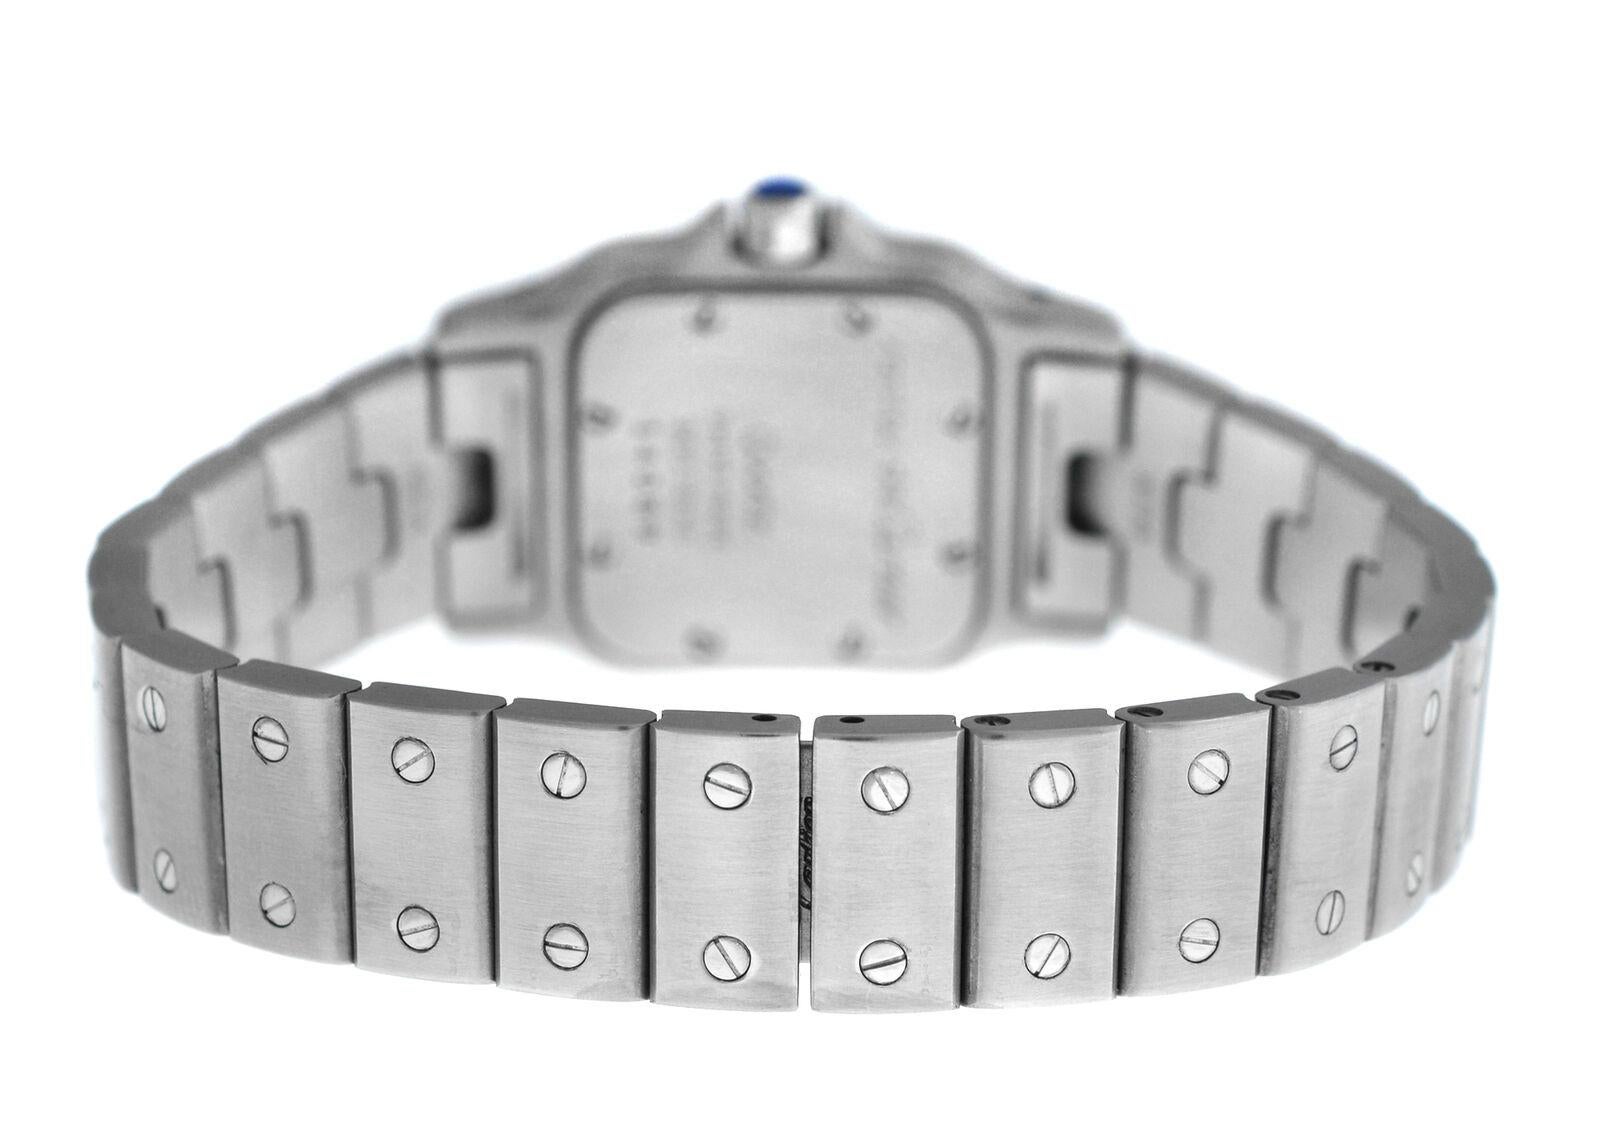 Ladies Cartier Santos Galbee 9057930 Stainless Steel Quartz Watch For Sale 2